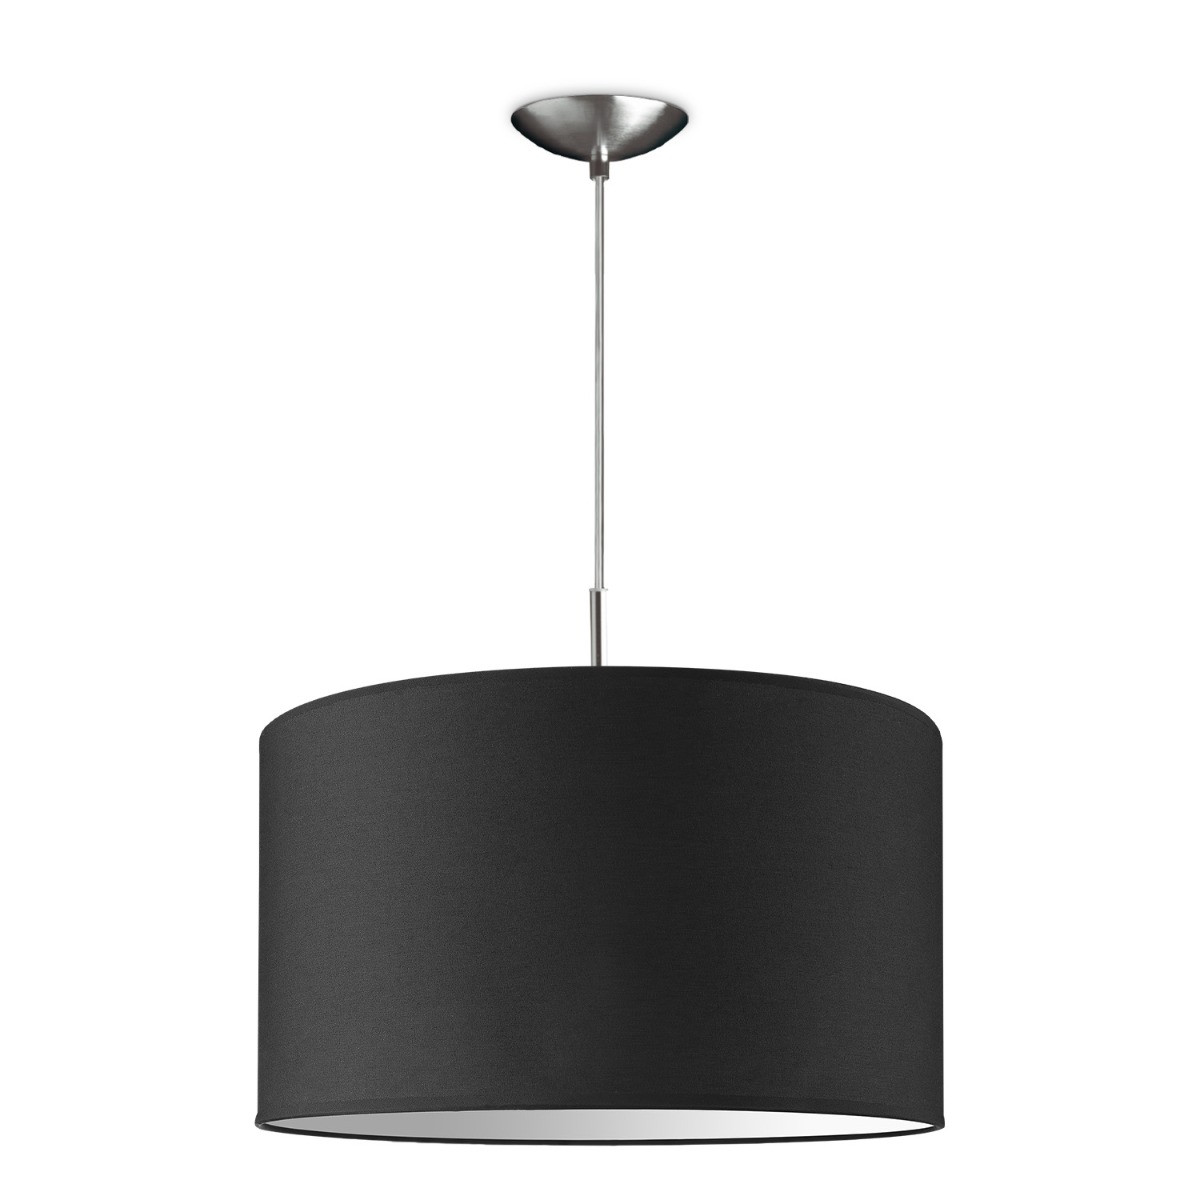 Light depot - hanglamp tube deluxe bling Ø 40 cm - zwart - Outlet